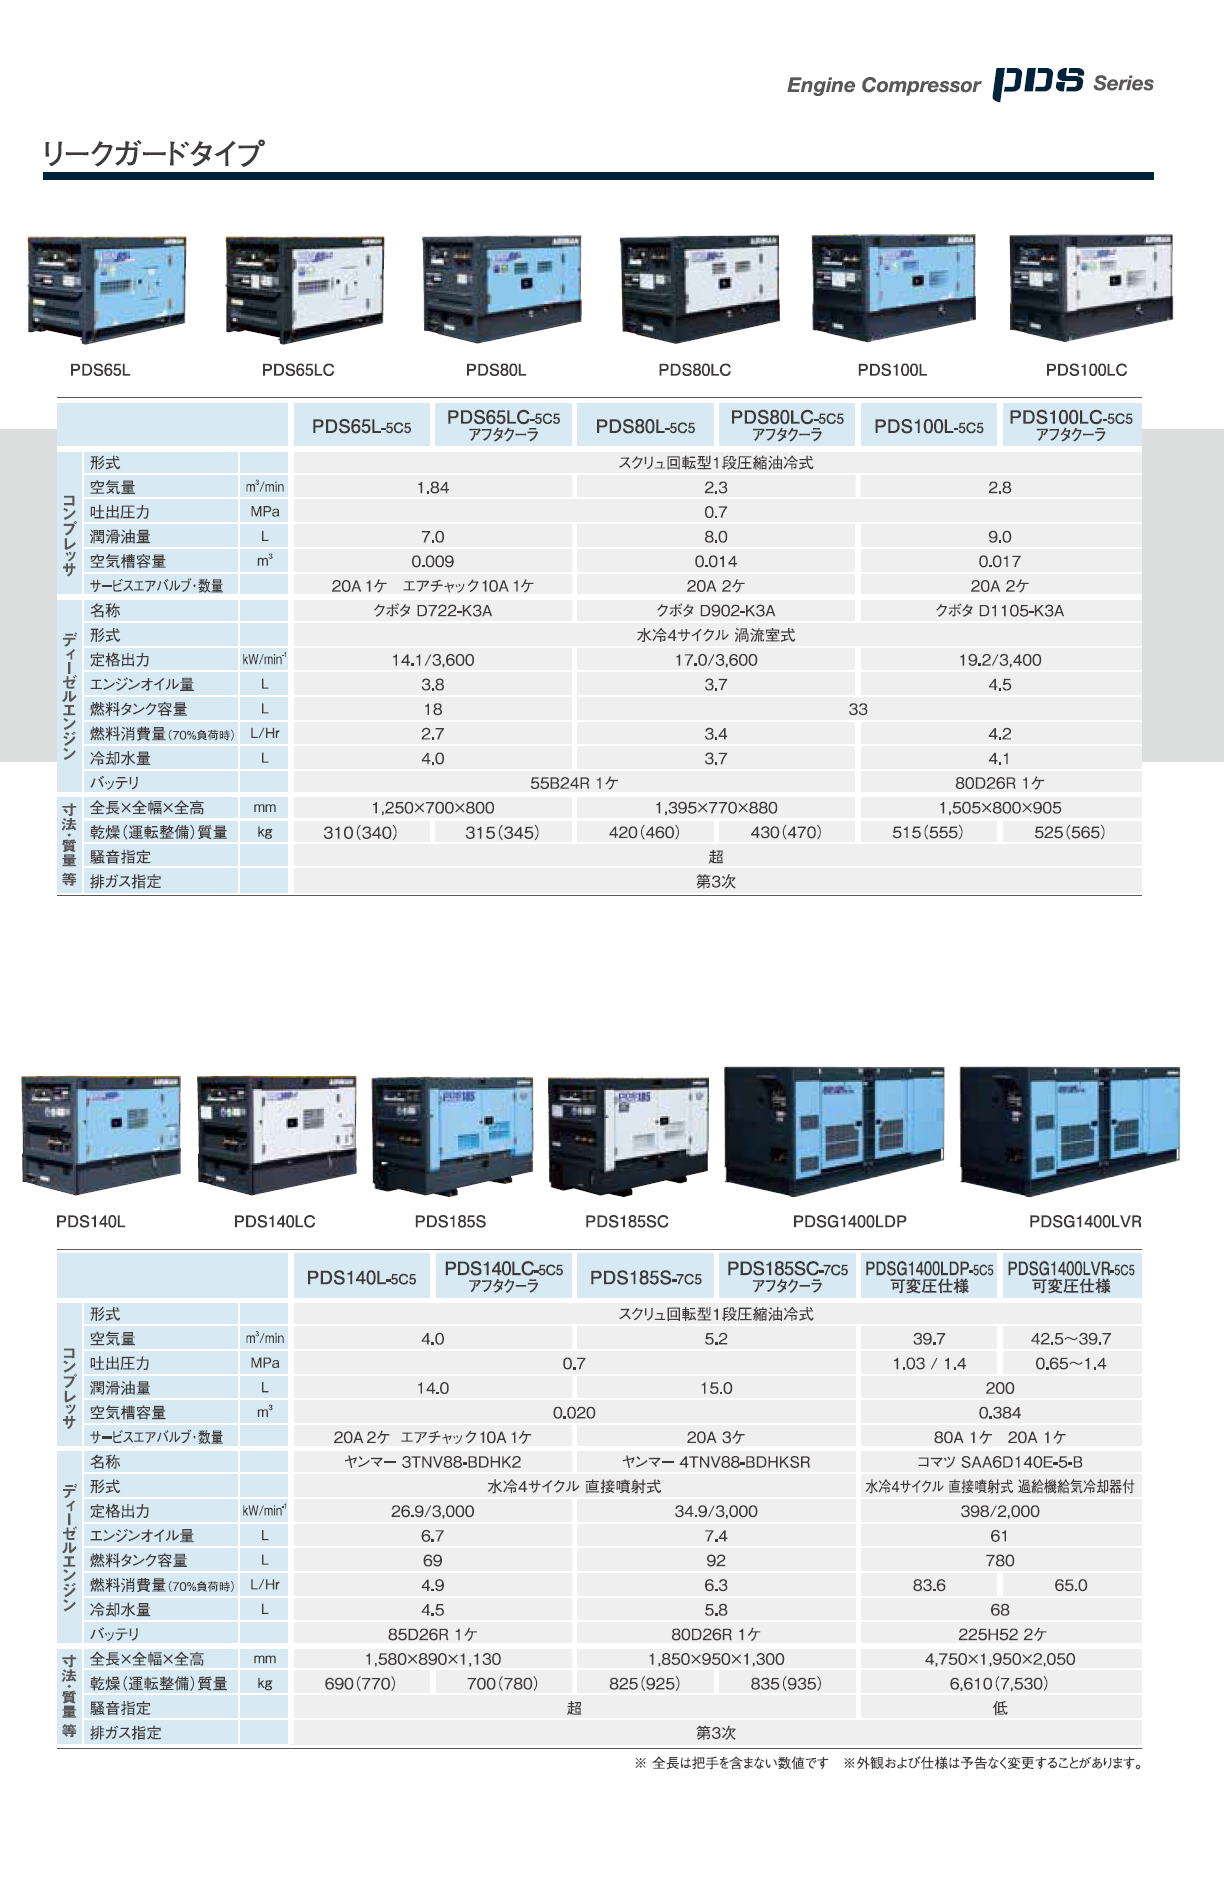 北越工業 AIRMAN エンジンコンプレッサ PDSシリーズ(PDS/PDSF/PDS-VR